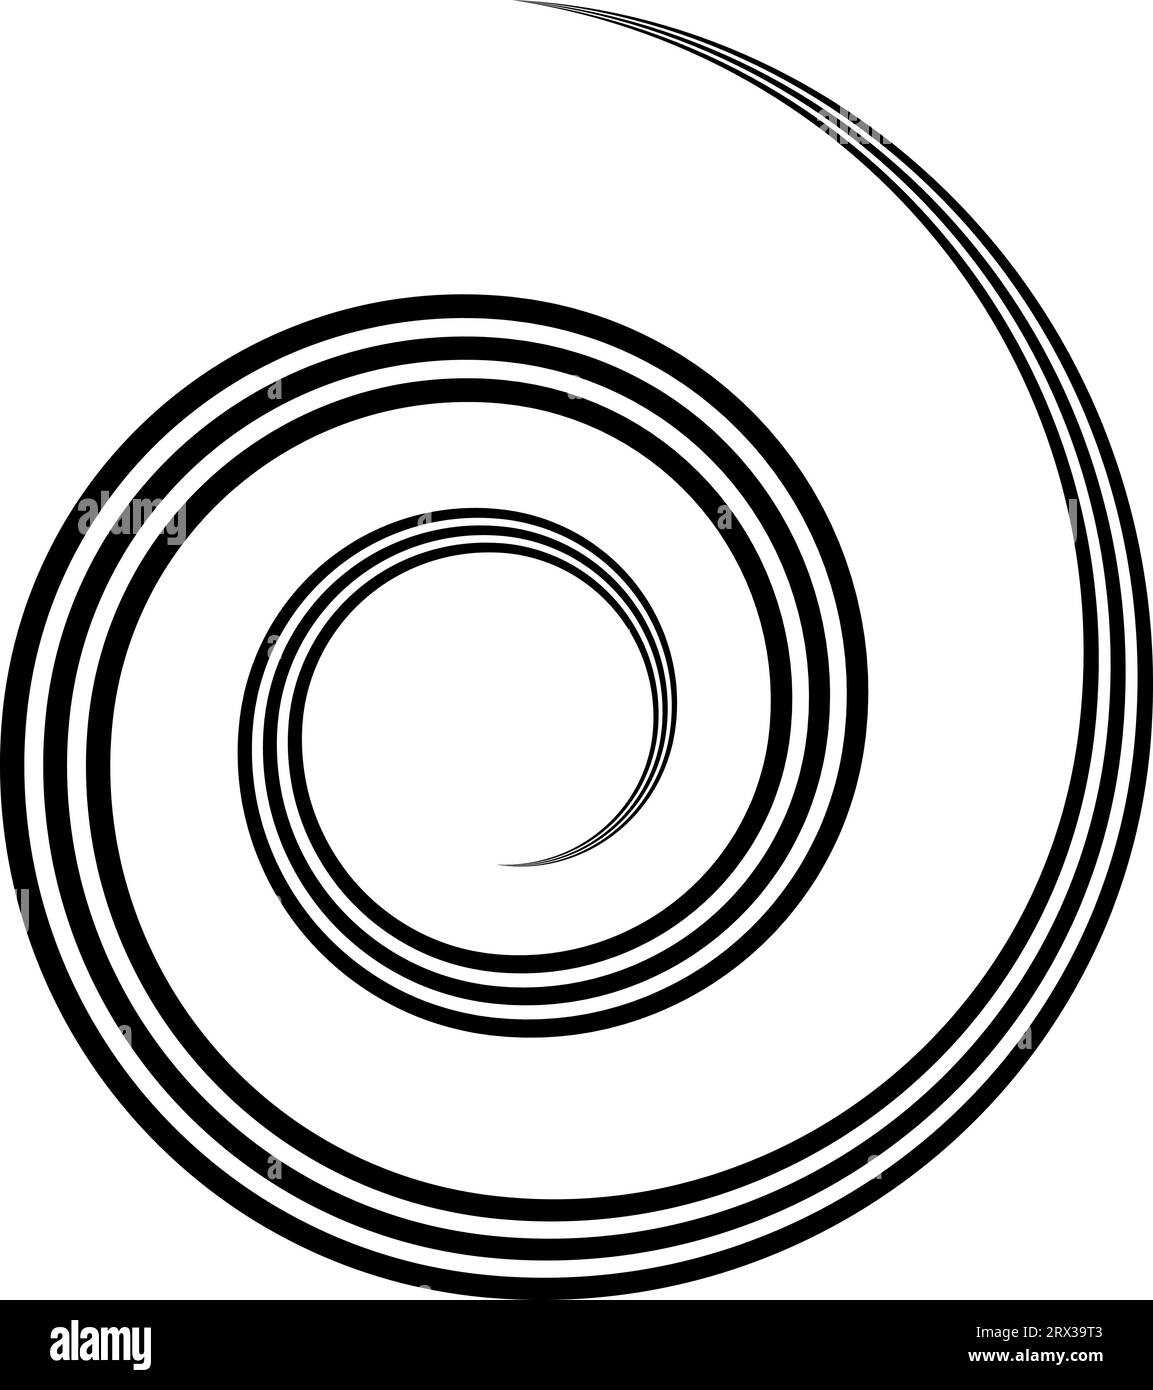 Dreifach spiralförmig, drehbar, runde, konzentrische Form, gewellte Grundplatte, Abbildung Stock Vektor